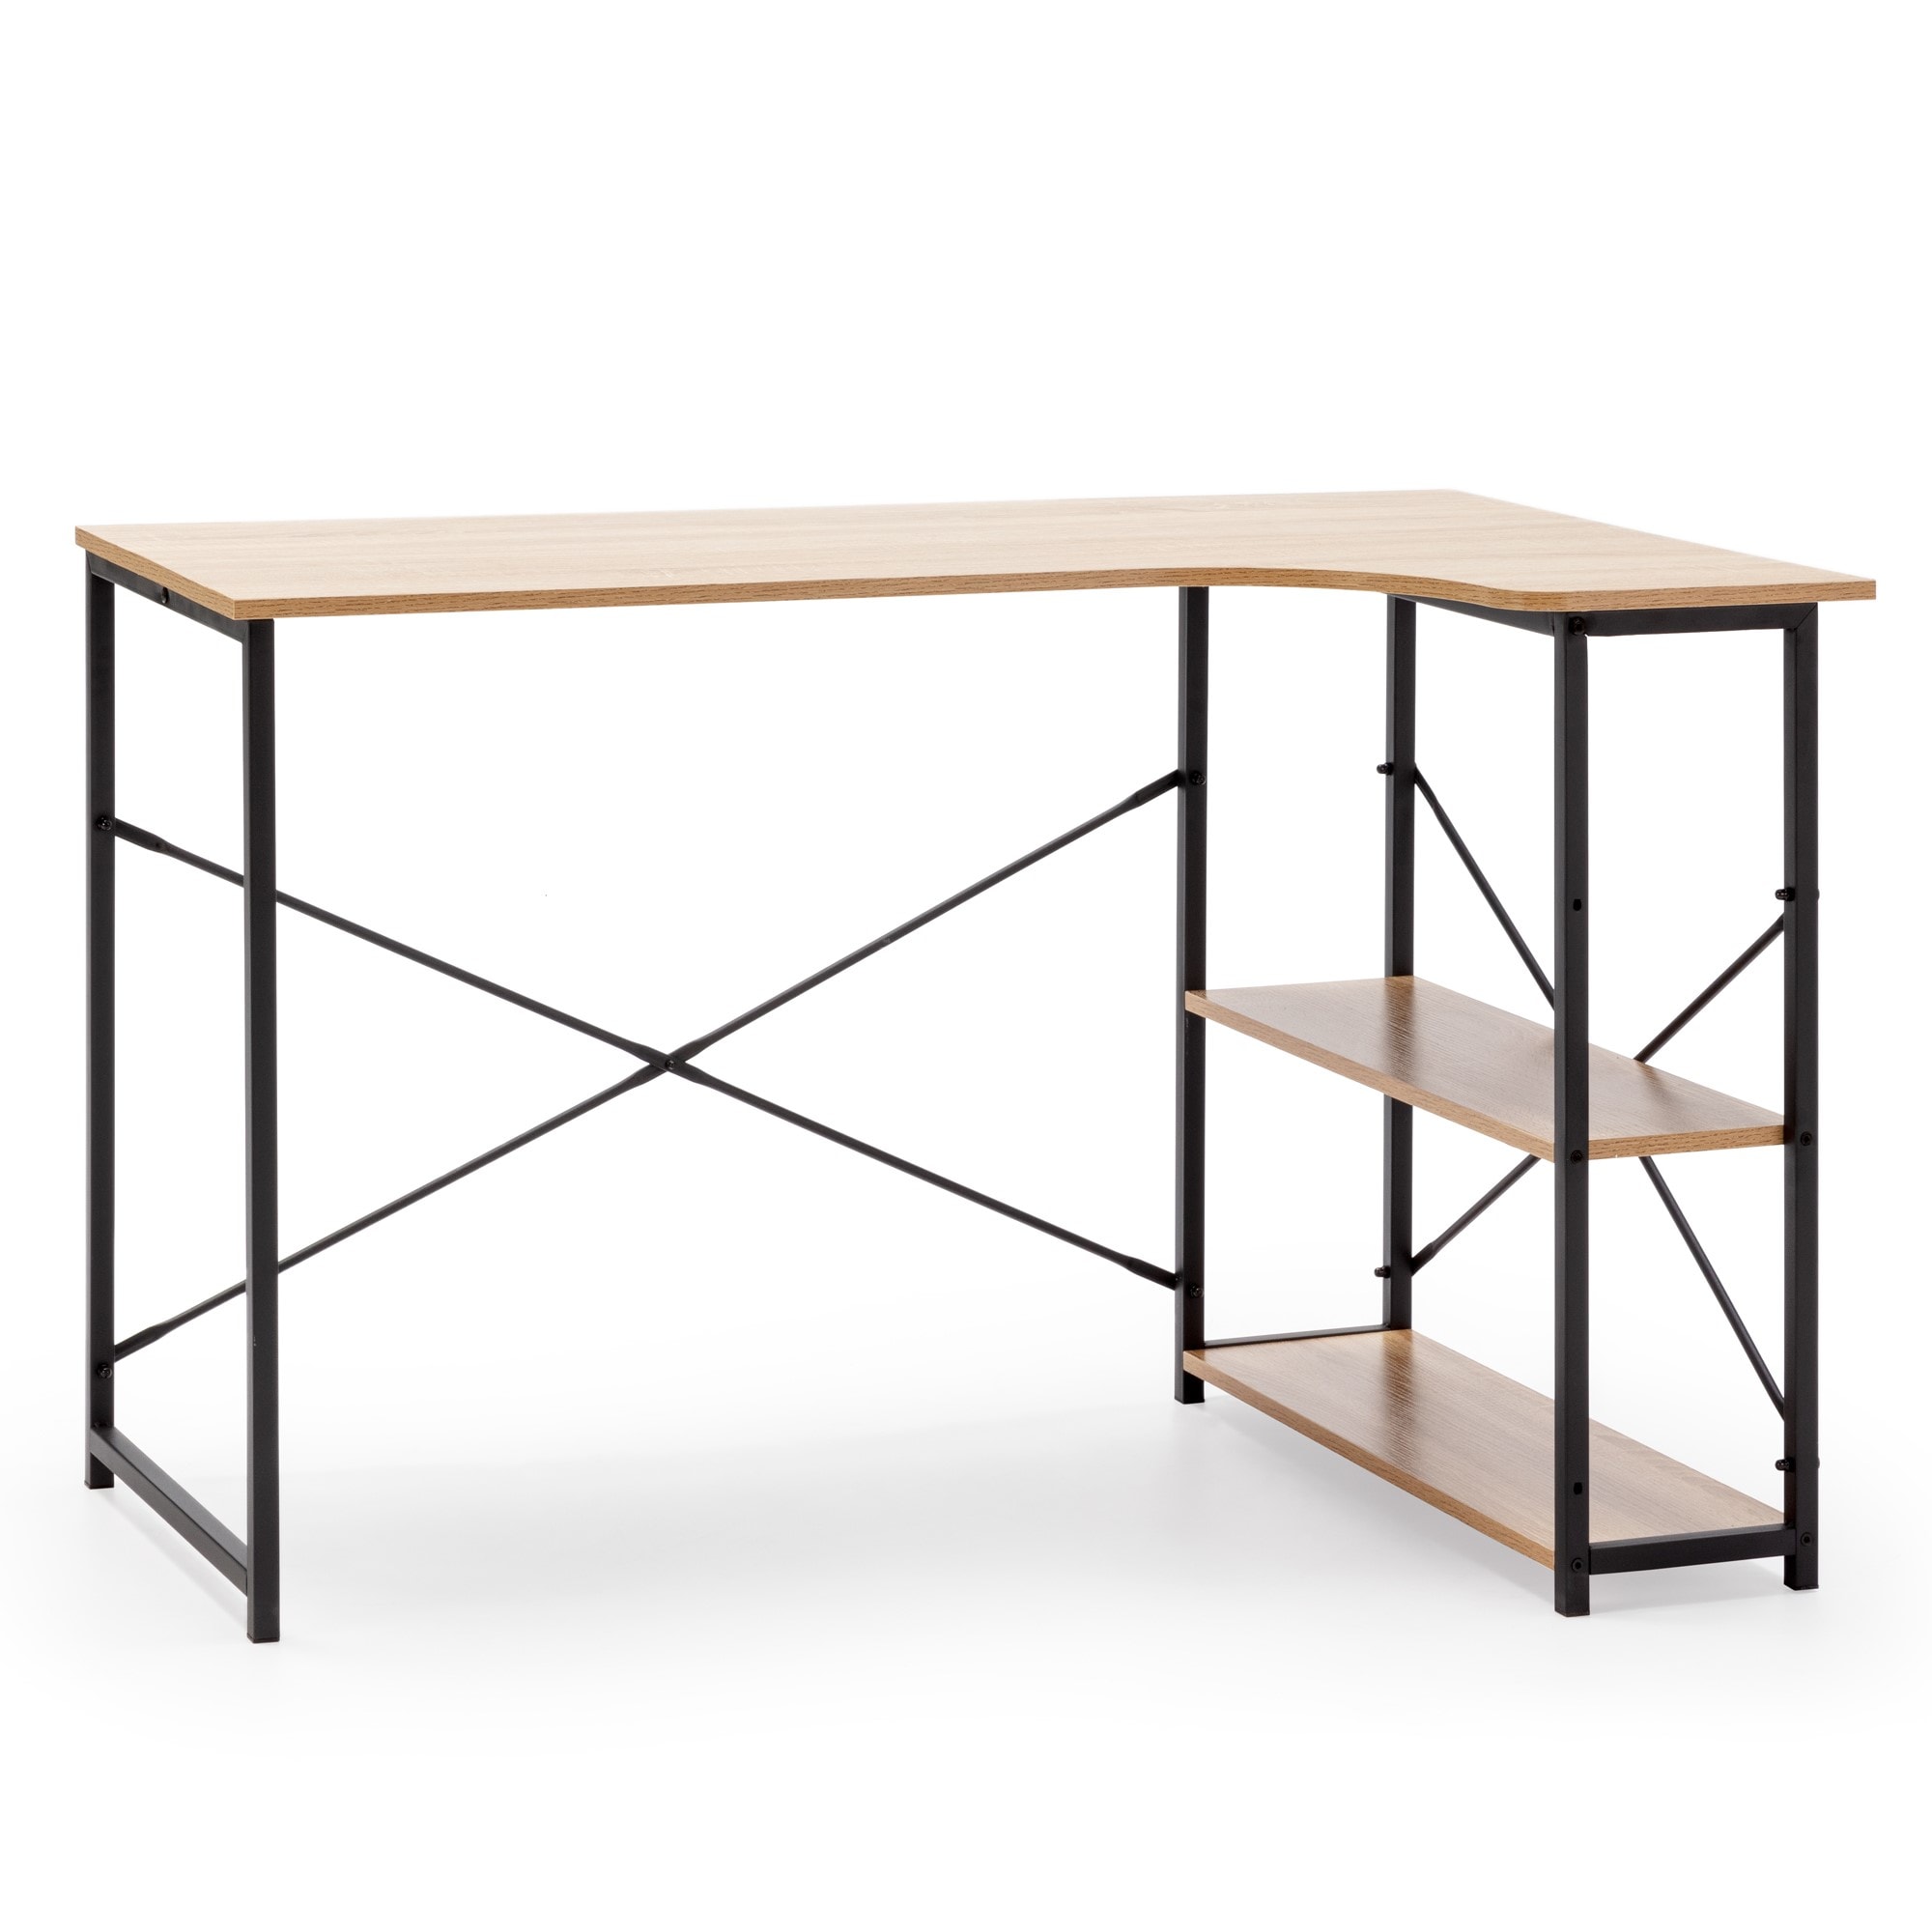 Table en bois et métal noir - Bureau style industriel - Largeur 120cm